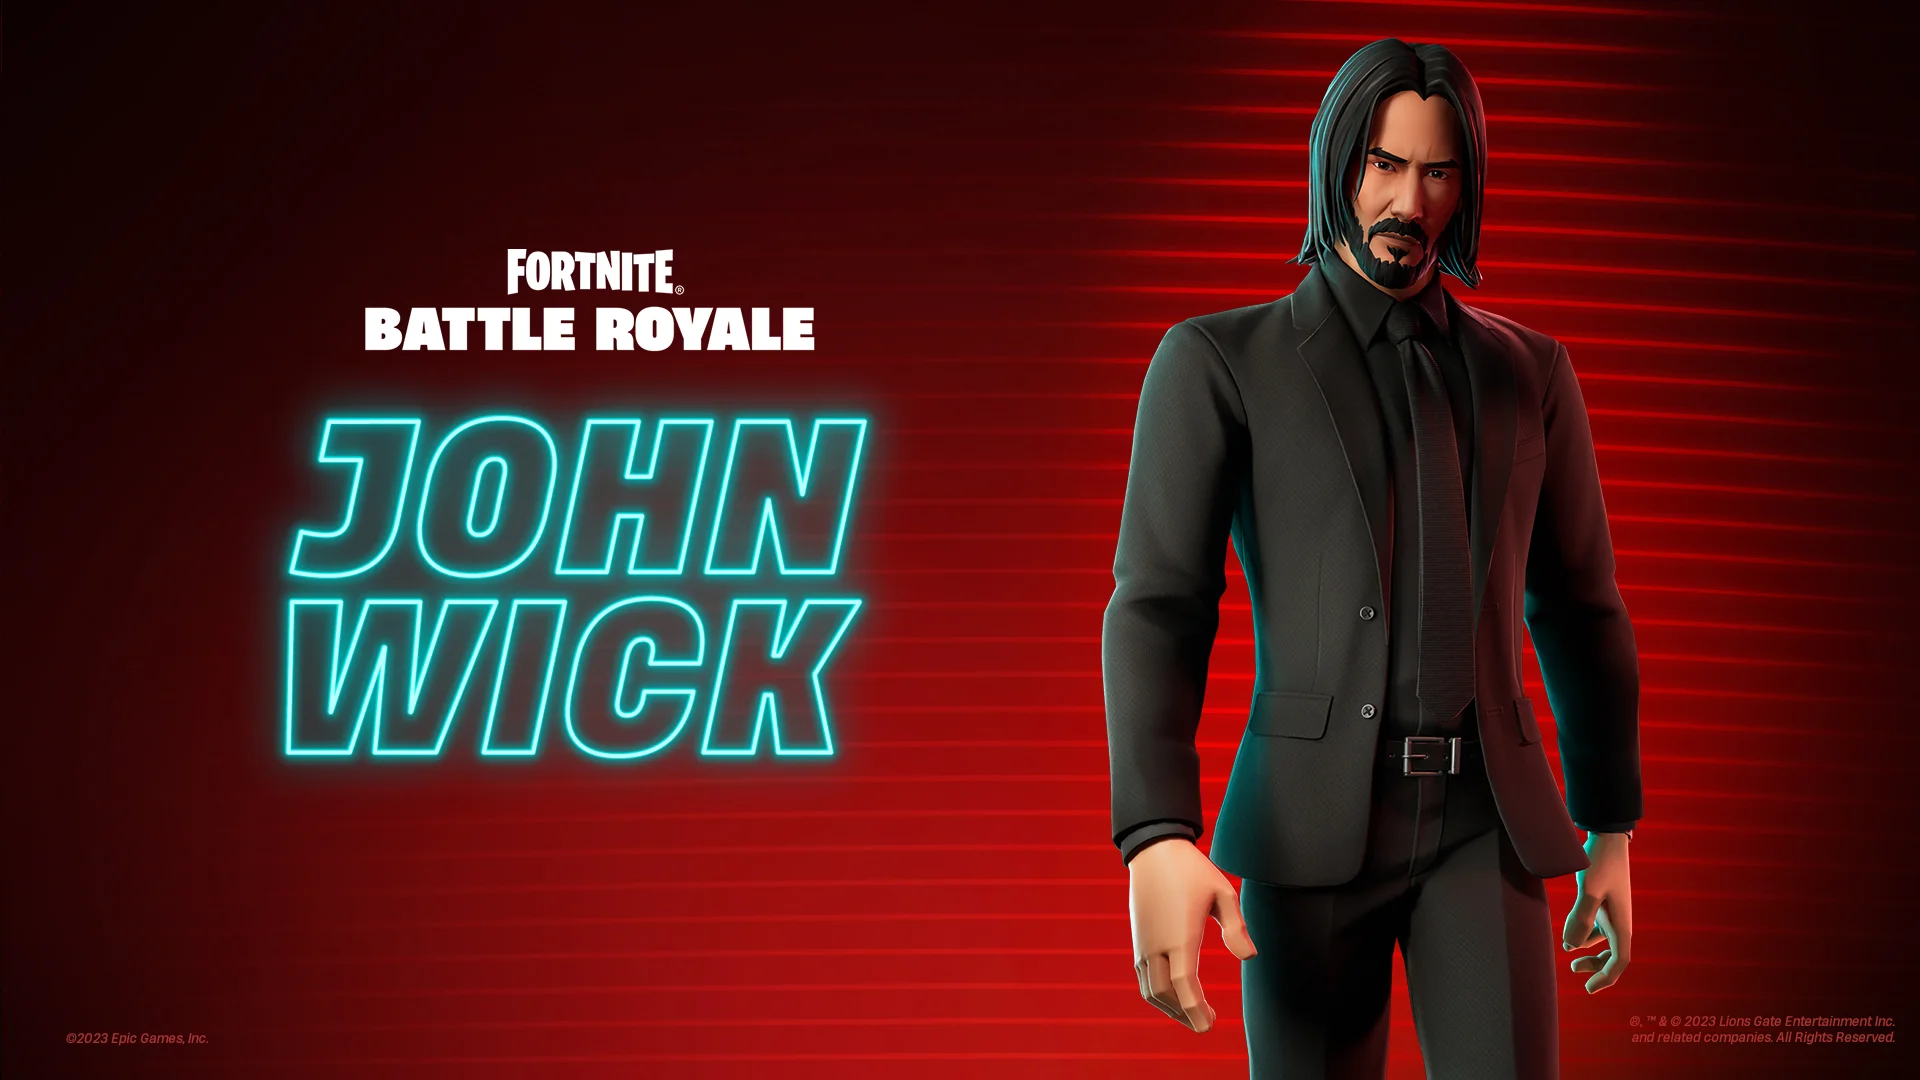 "Yeah, I'm thinking I'm back!" John Wick is back in Fortnite